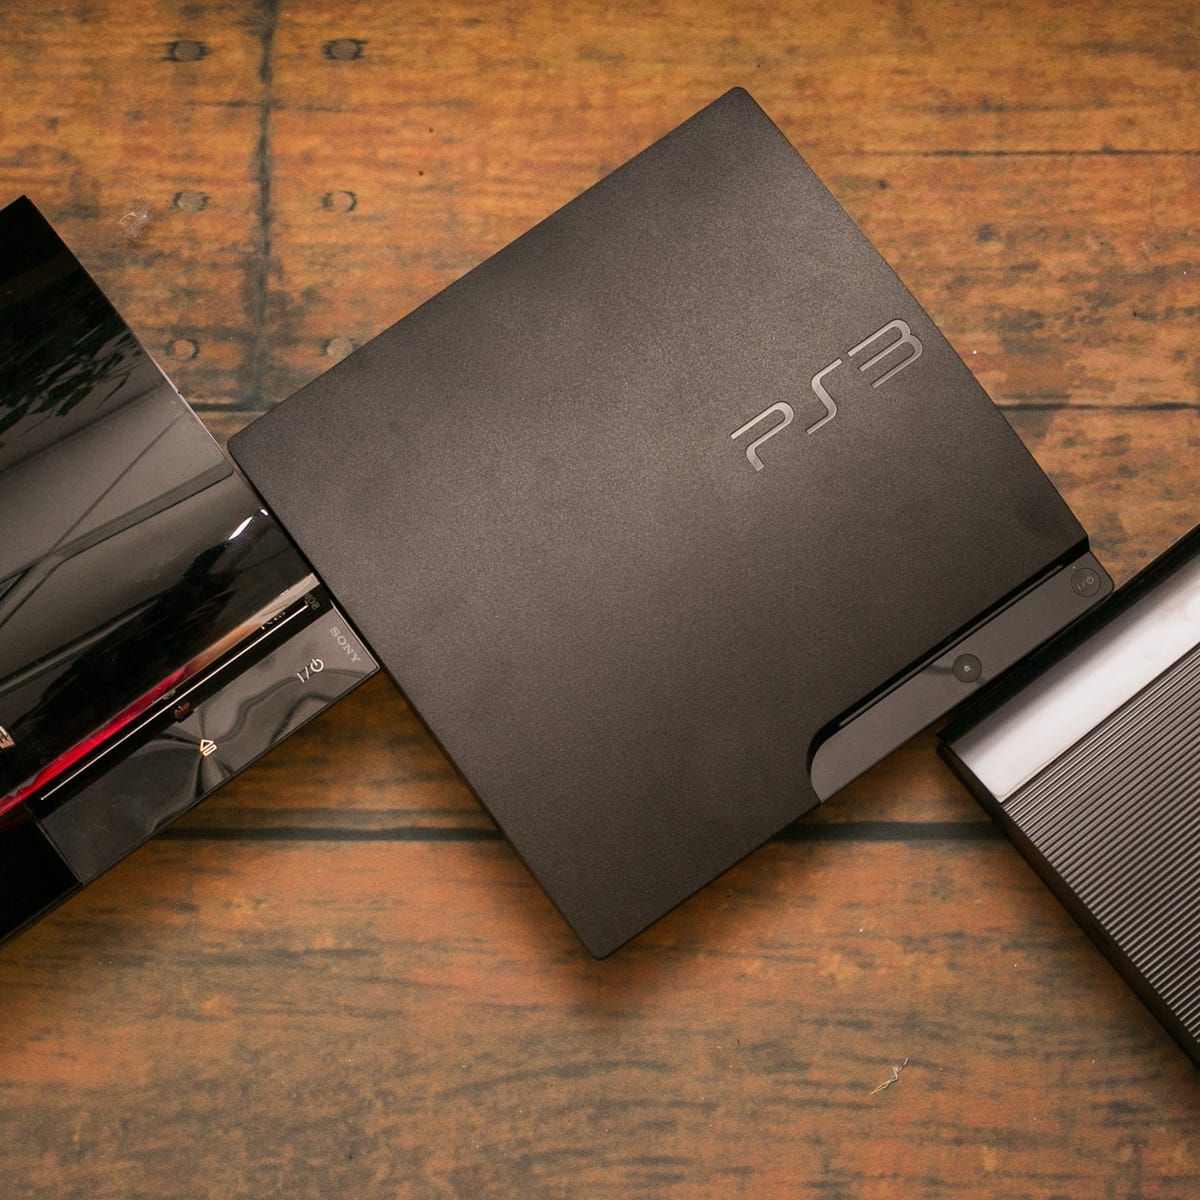 La PlayStation 3 Podría Tener Un Port De GTA 6, Gracias a unas filtraciones